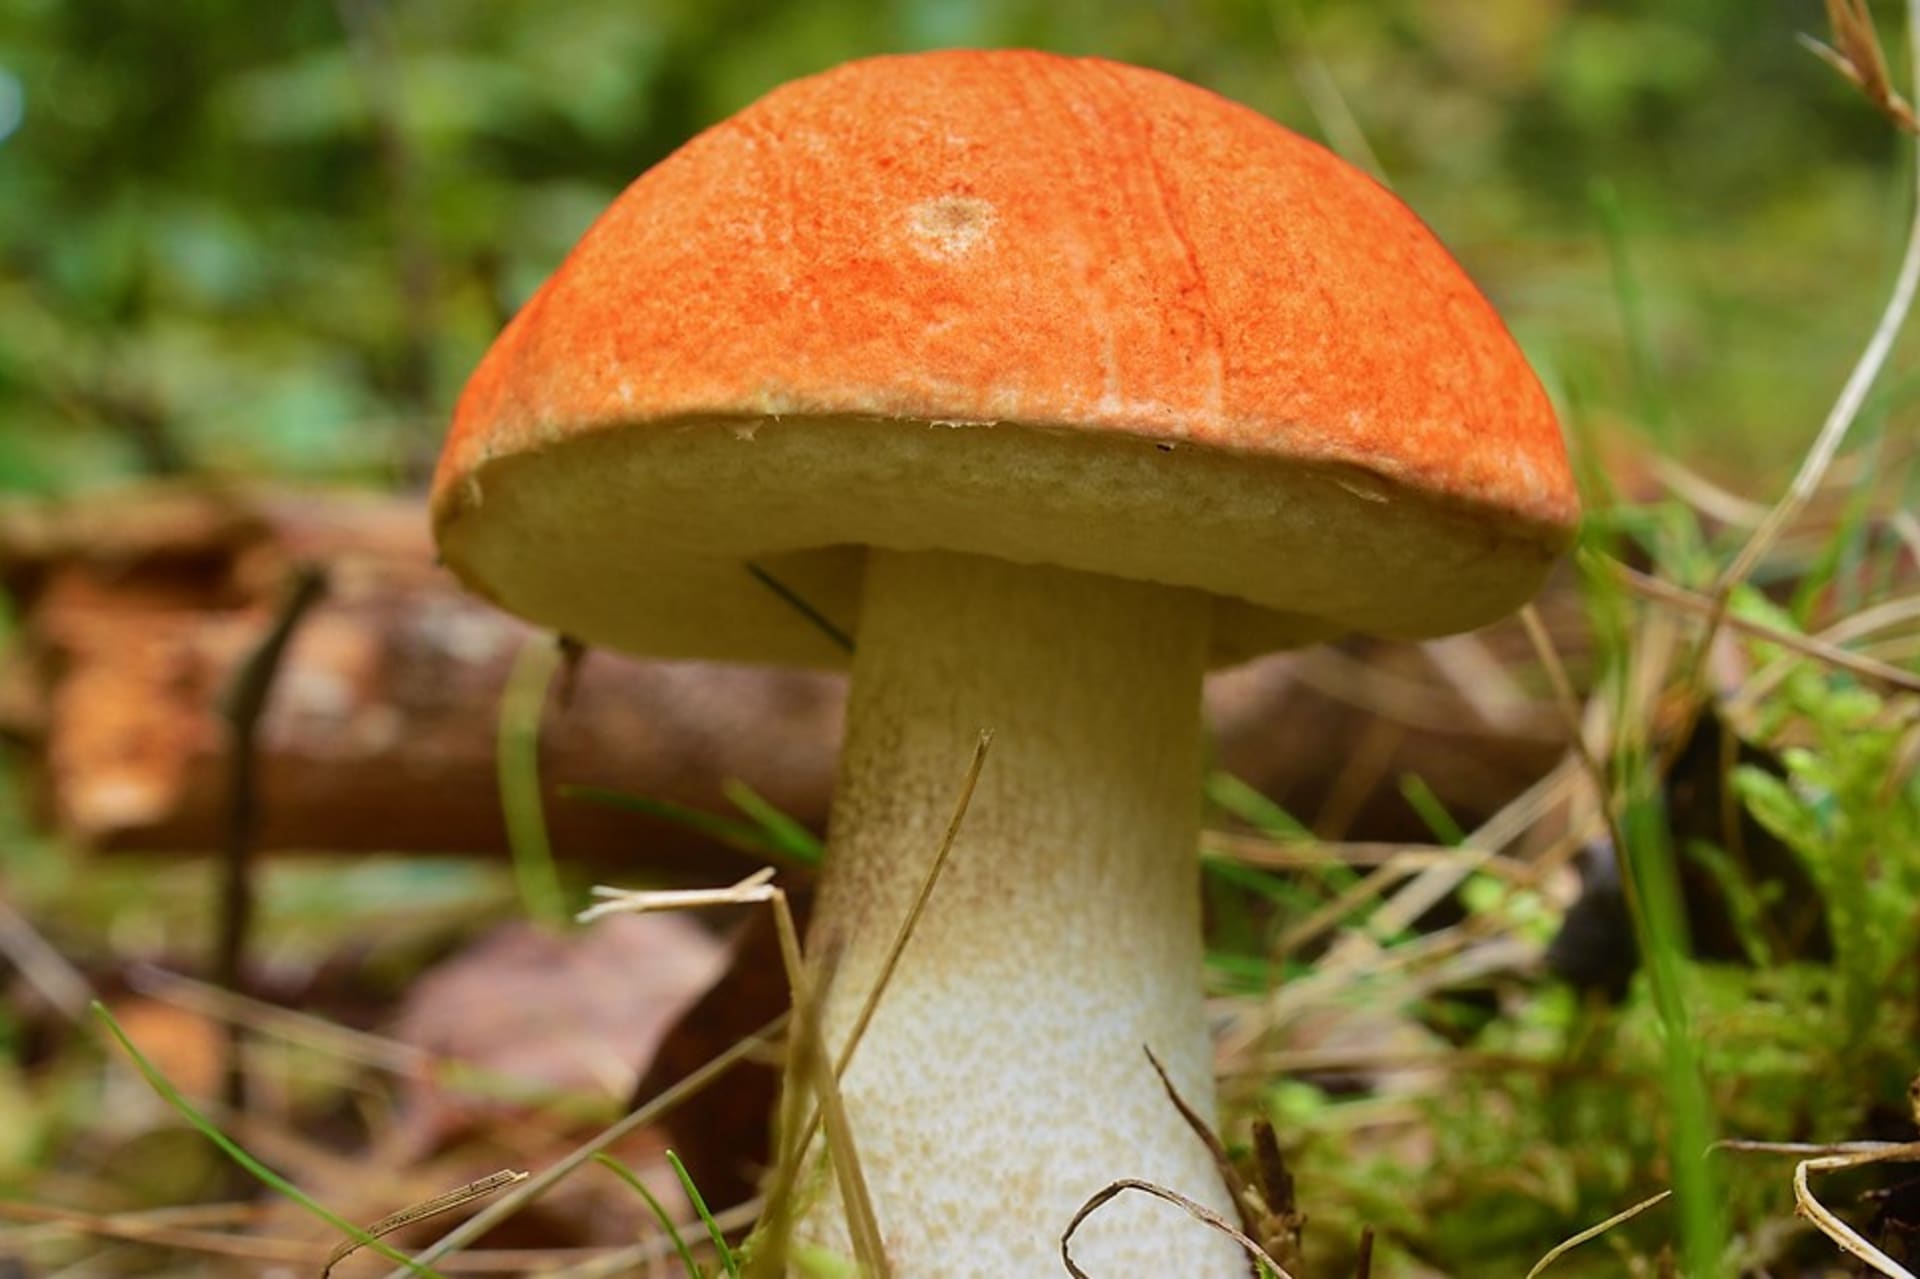 Křemenáč smrkový (Leccinum piceinum) patří mezi ohrožené druhy hub, je zařazený v červeném seznamu hub ČR. Roste od konce června do začátku listopadu.